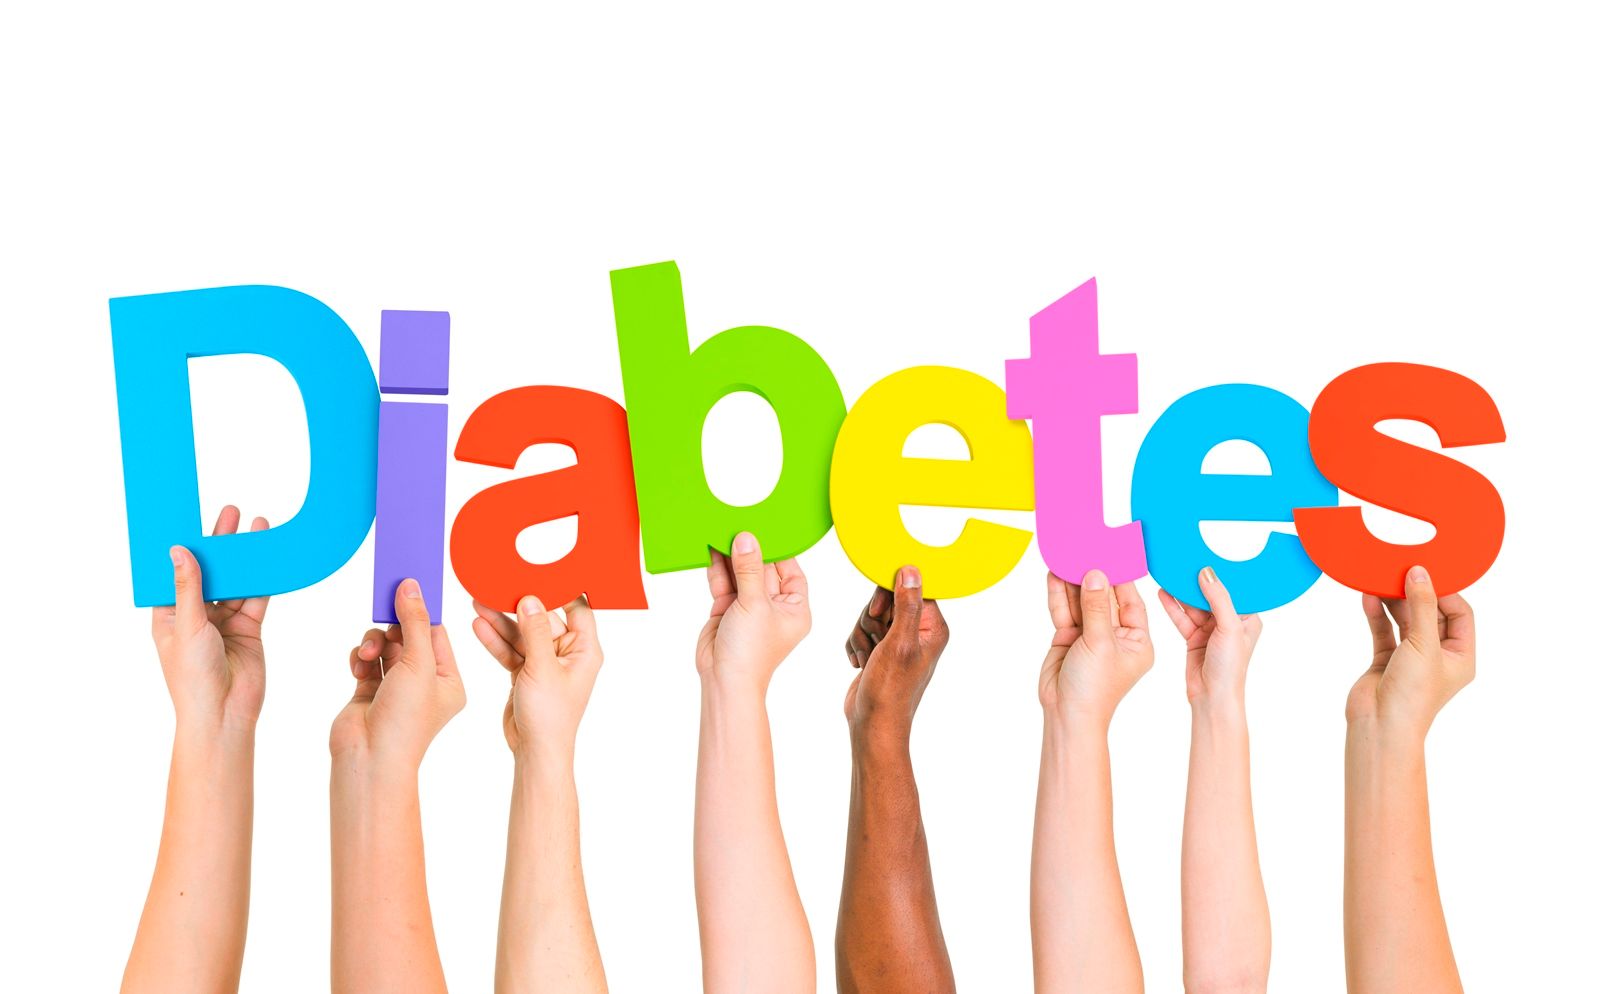 Manos sosteniendo letras de la palabra "diabetes"